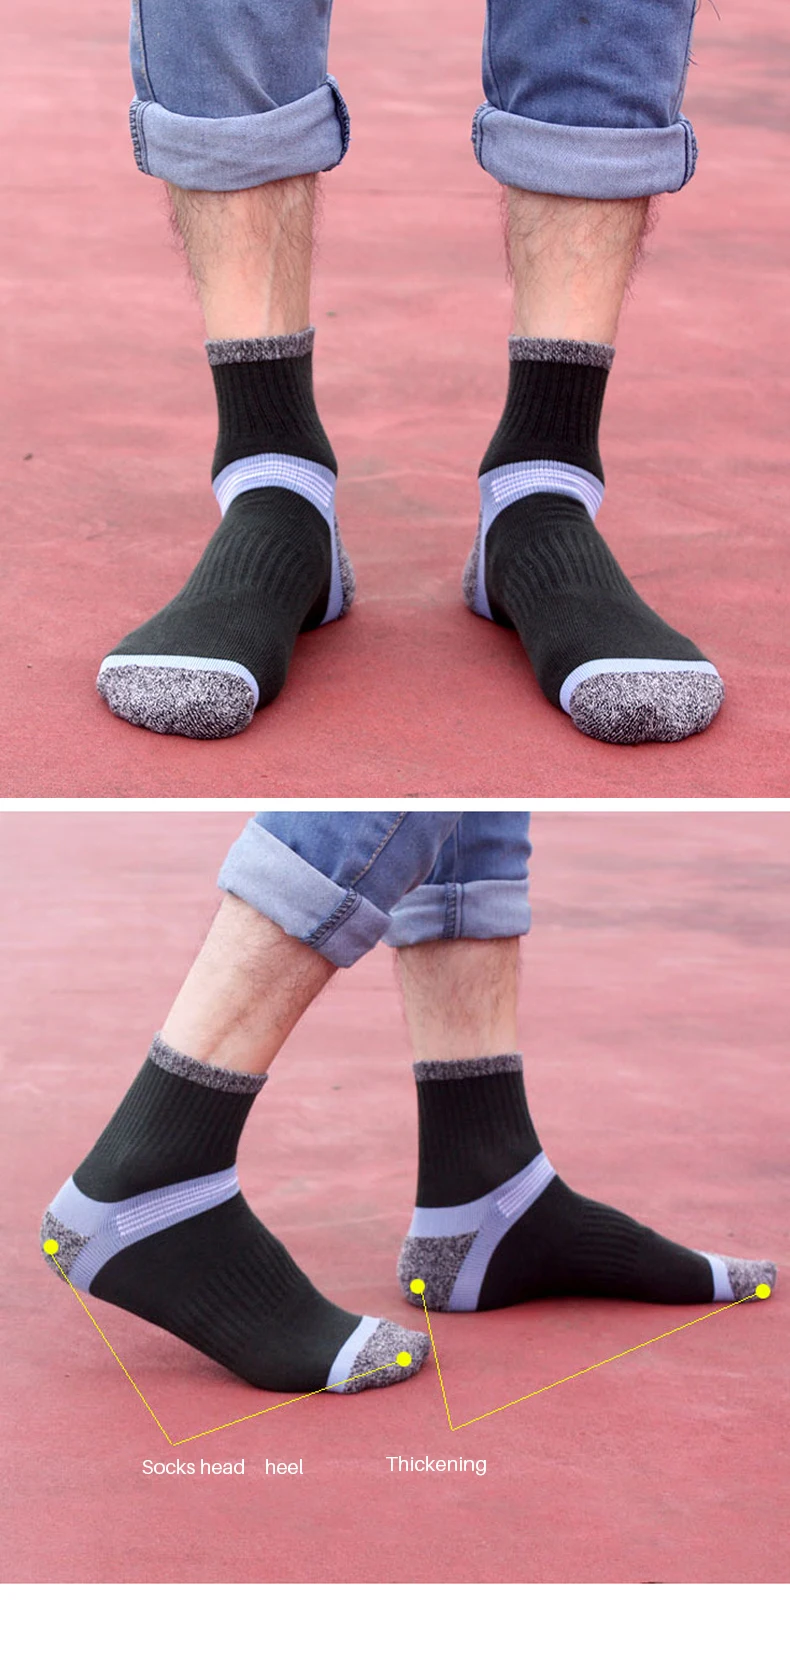 KFR Для мужчин носки обычные спортивные носки дышащие поглощение пота дезодорант хлопок открытый Для мужчин баскетбол спортивные носки для